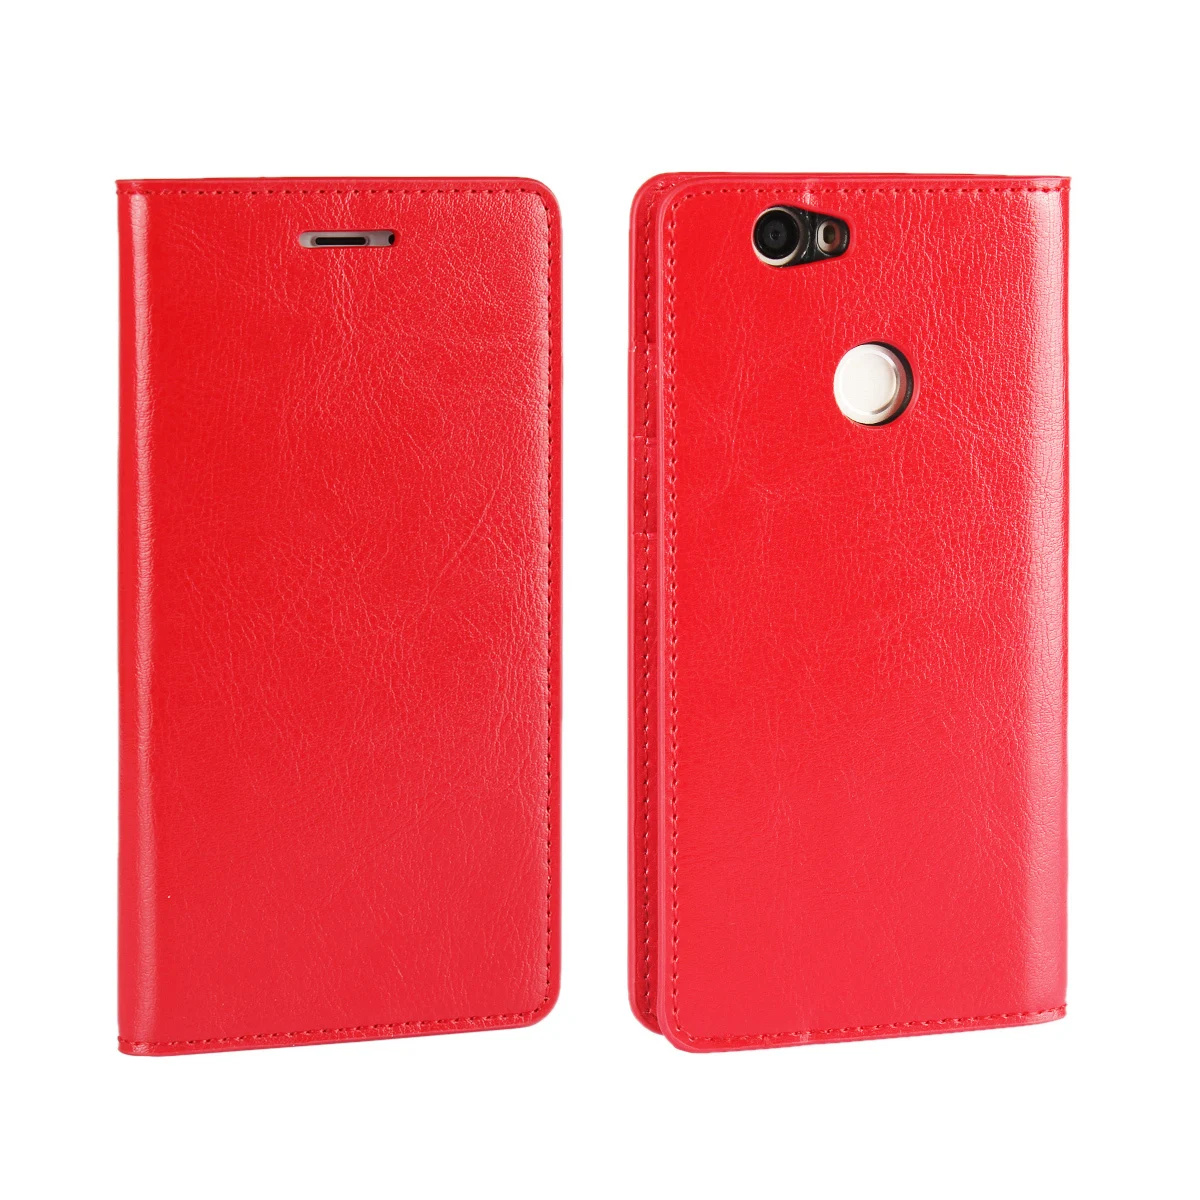 Роскошный чехол-кошелек для huawei Nova Nova2 plus, кожаный чехол премиум класса для huawei Nova 2 plus, откидная крышка, чехлы для телефонов - Цвет: Красный